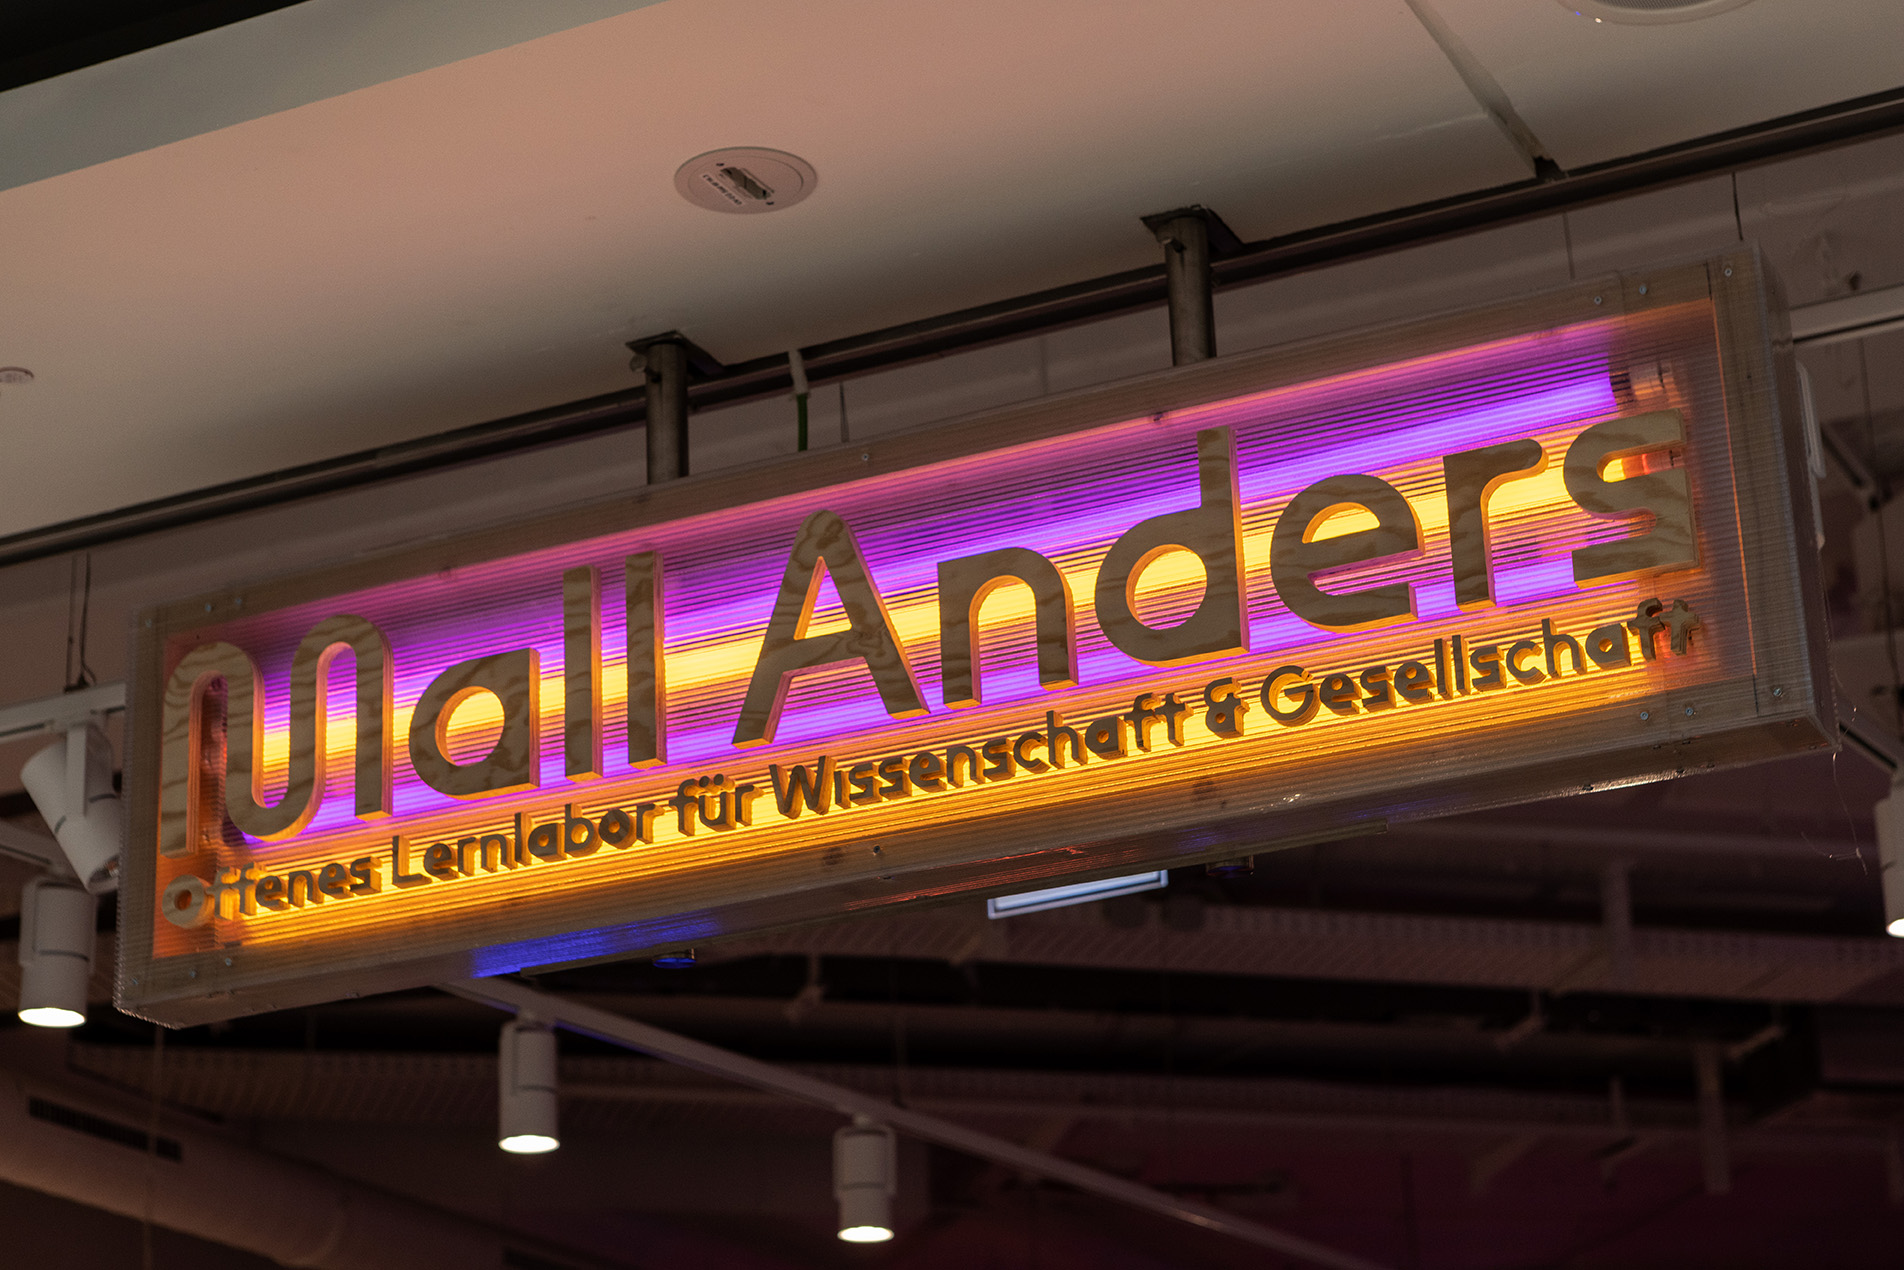 Foto zeigt leuchtendes Display mit der Aufschrift "Mall Anders - Offenes Lernlabor für Wissenschaft & Gesellschaft"